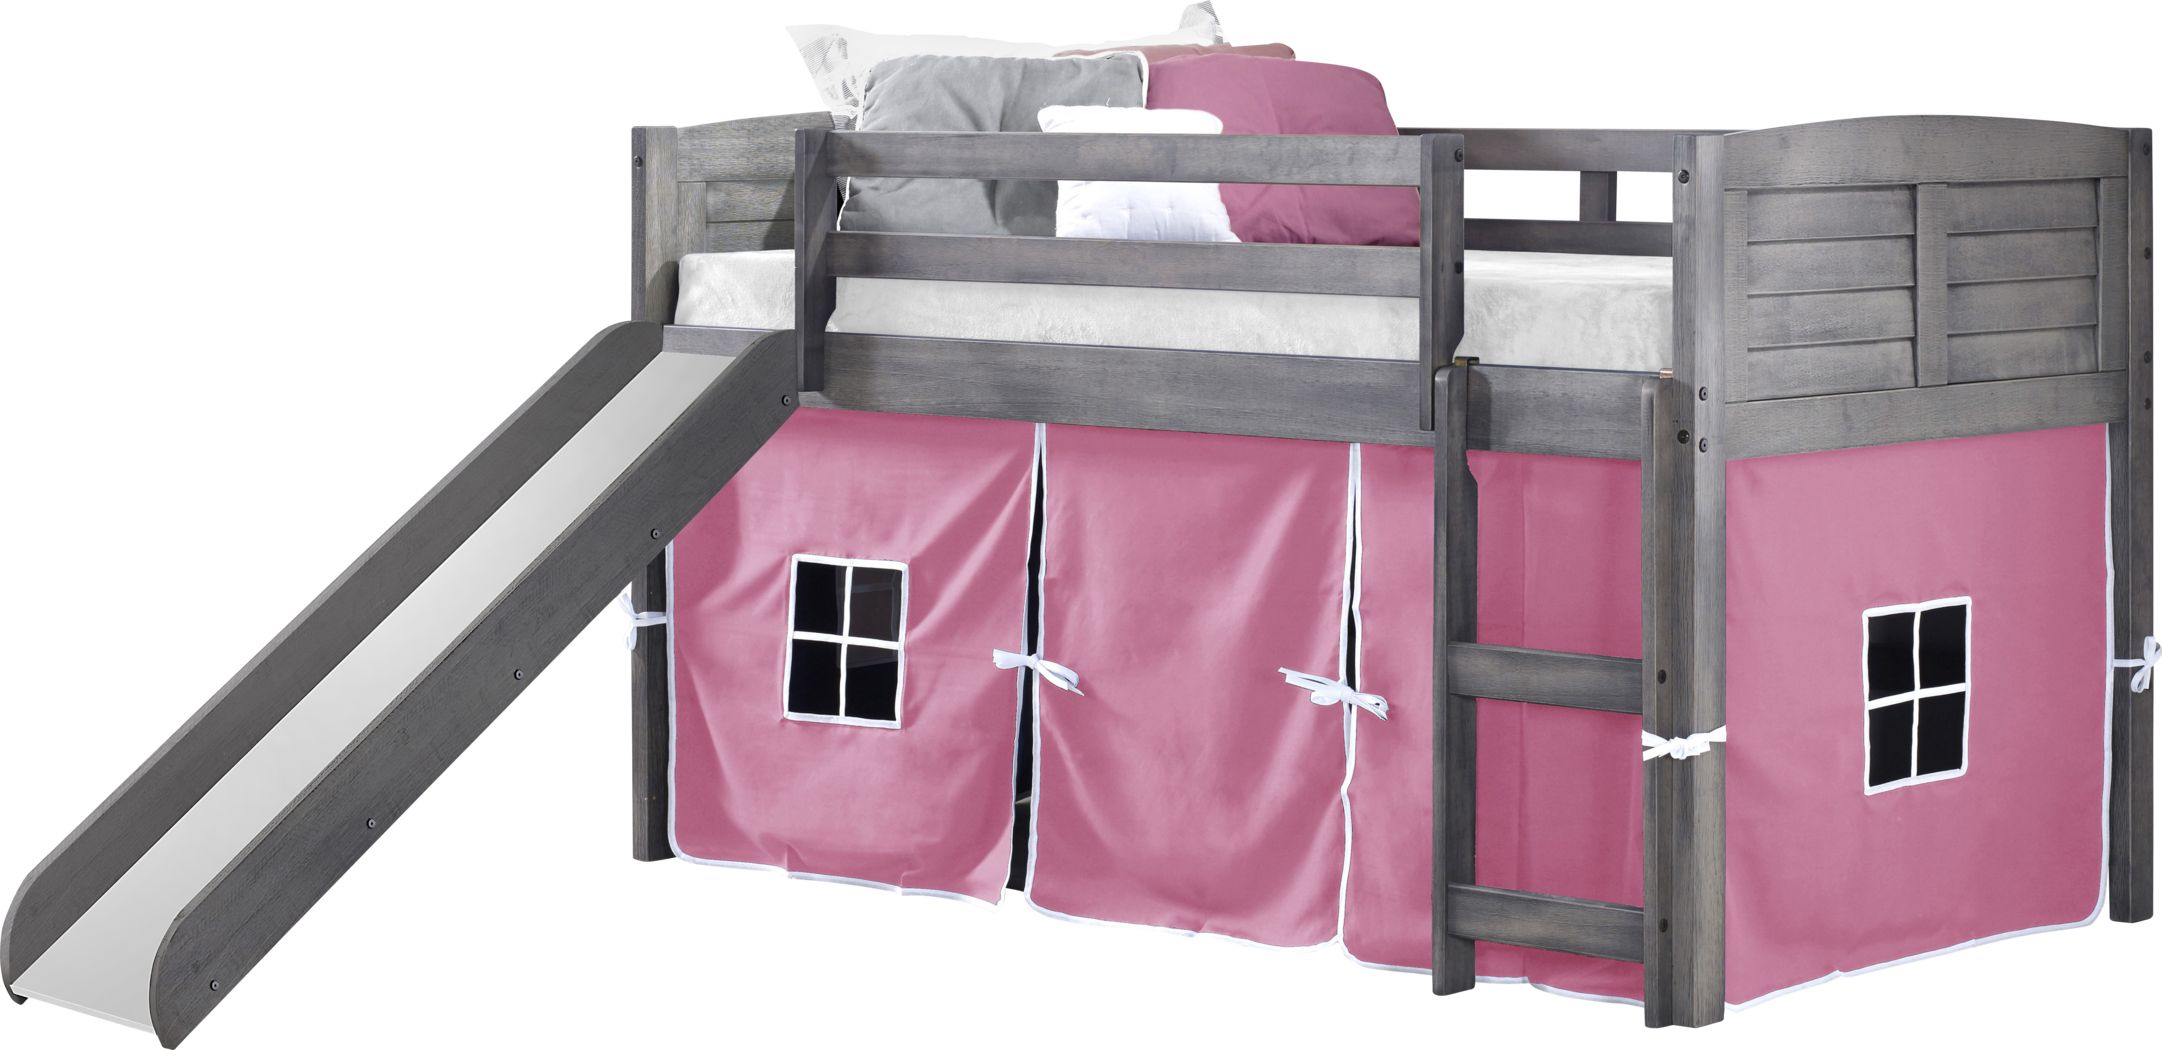 Bunk Beds For Kids, Hideaway Bunk Beds